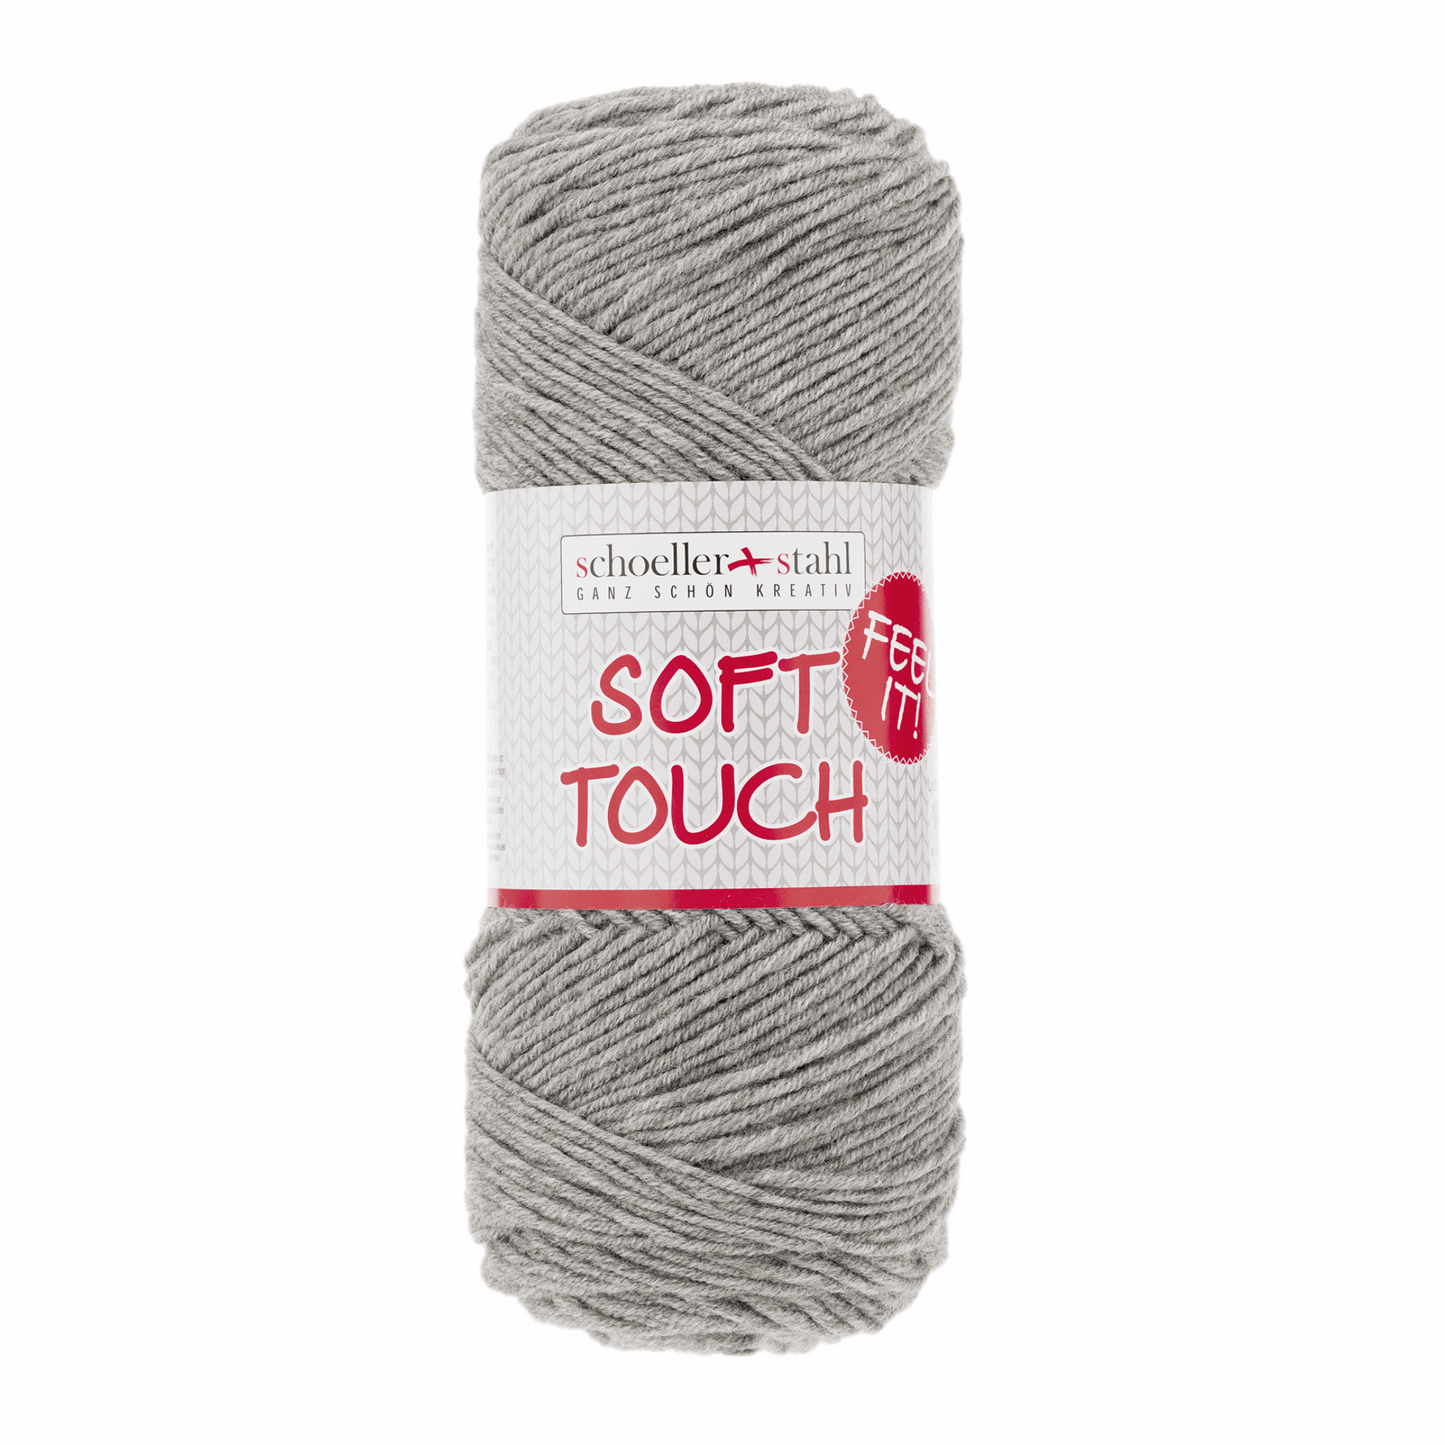 Soft touch 100g pullskin, 90283, Farbe 14, hellgrau